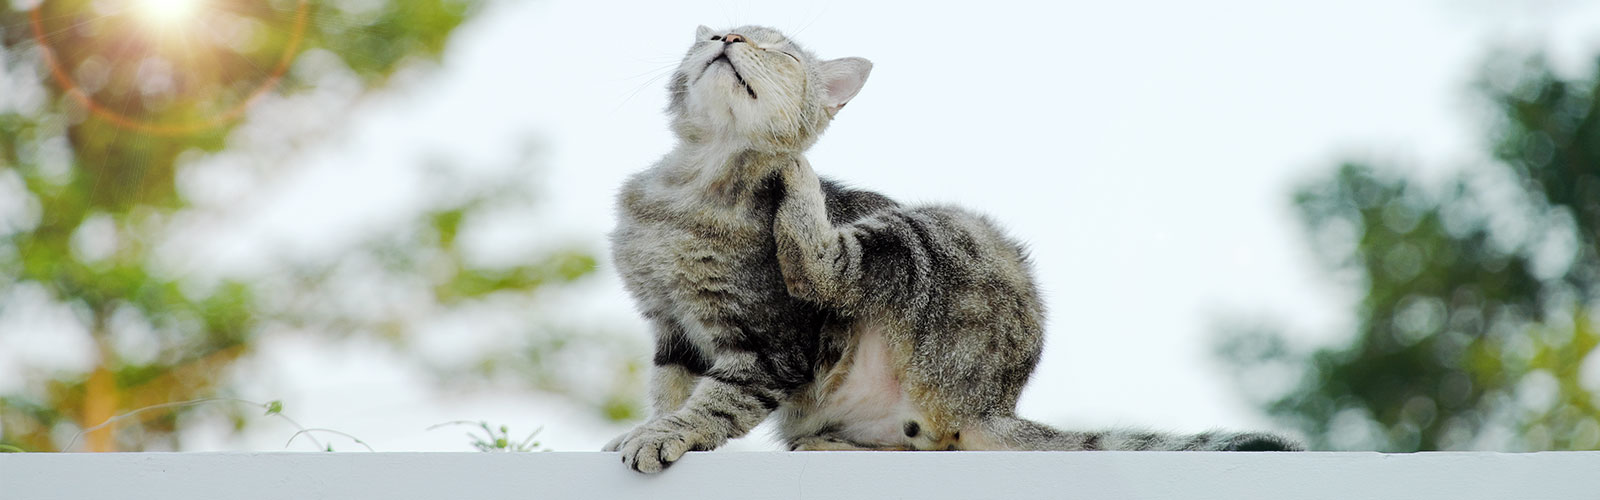 Eine Katze kratzt sich. Schuld daran können Milben bei der Katze sein.